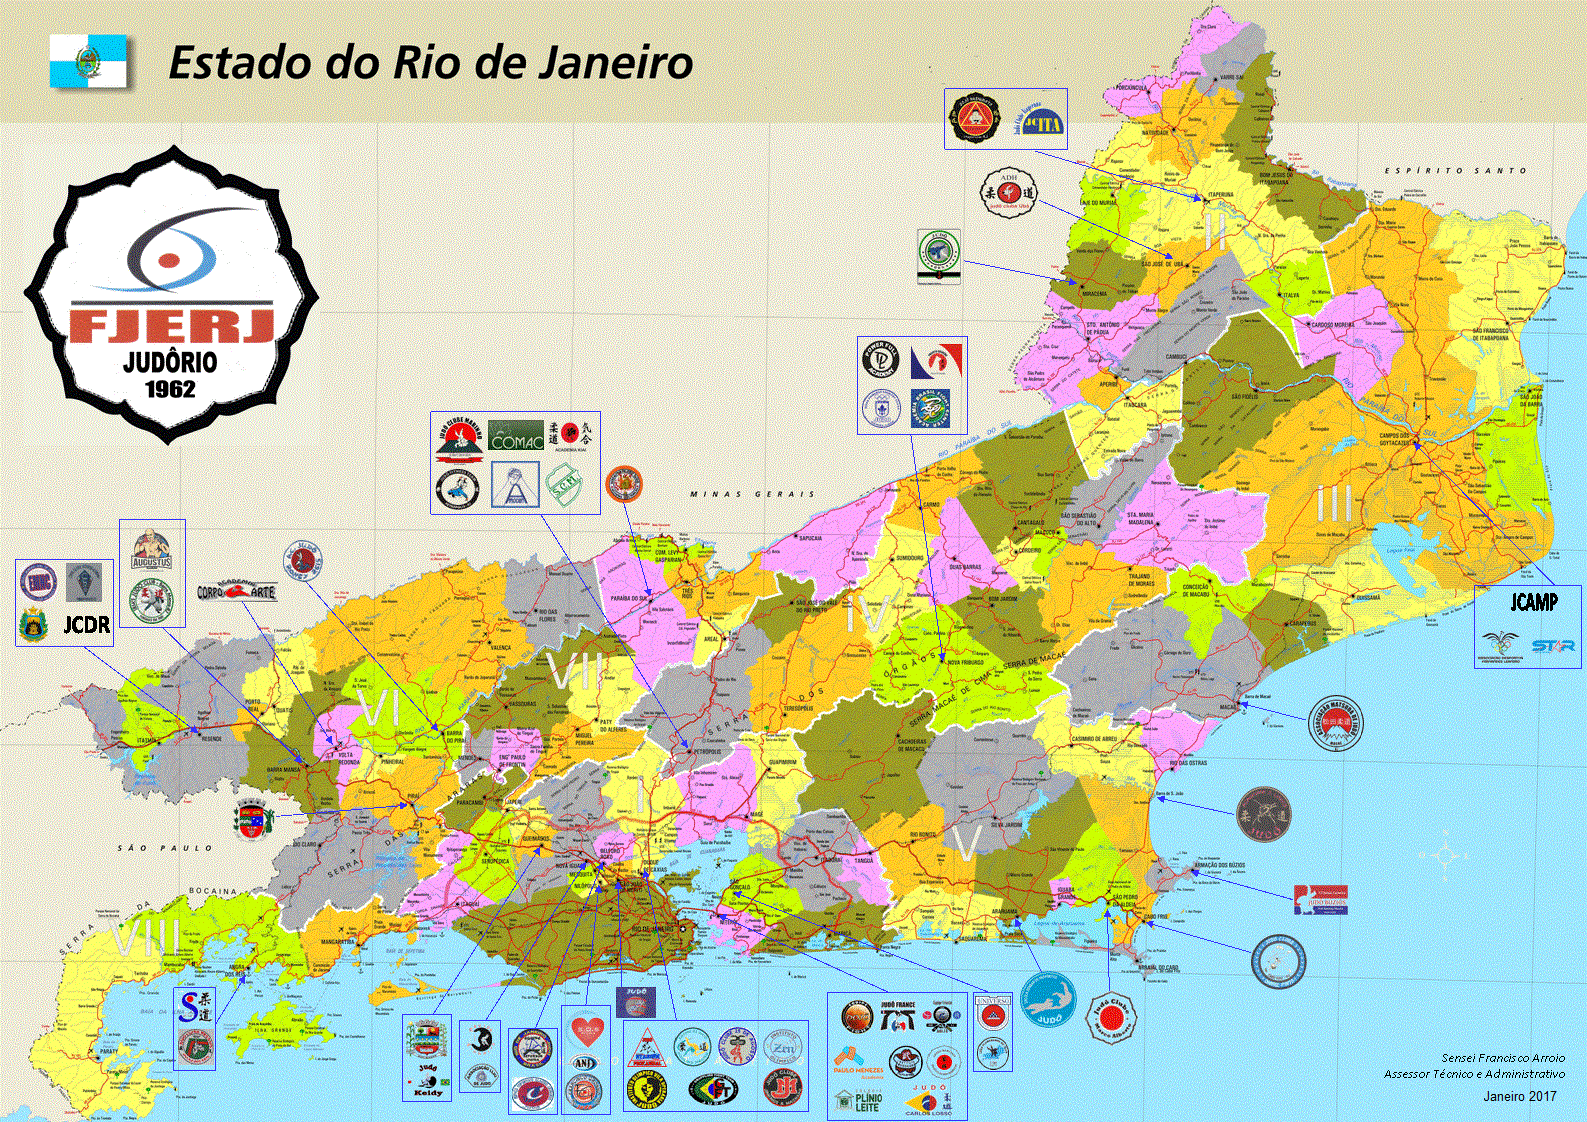 Mapa Do Estado Do Rio De Janeiro